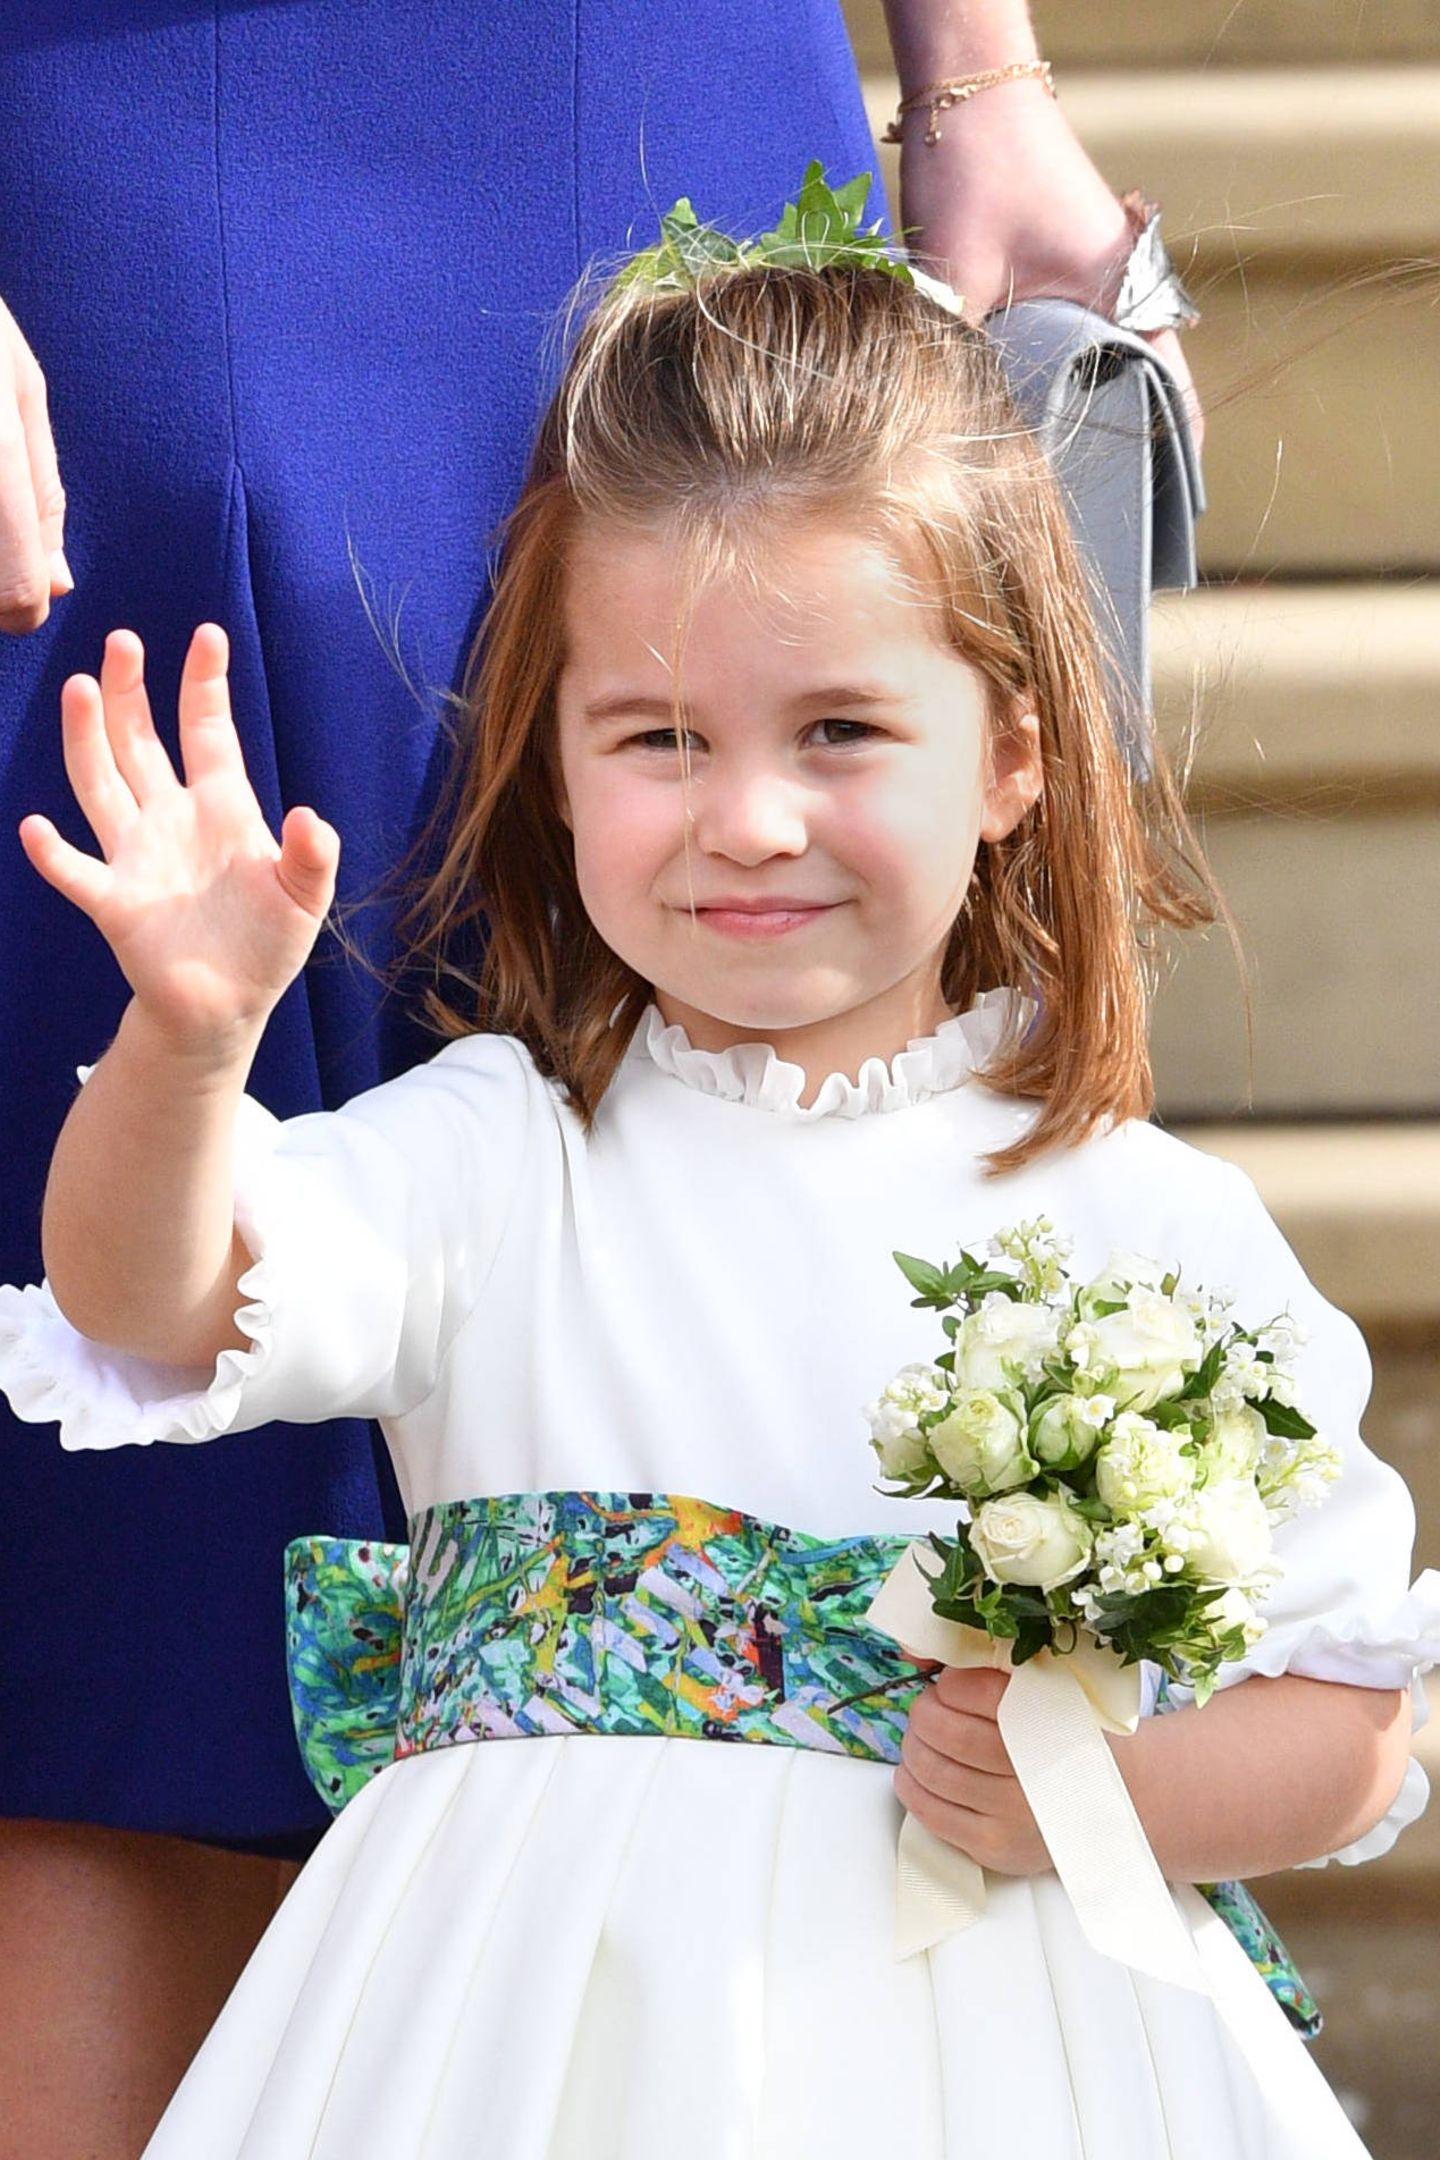 Prinzessin Charlotte ist die kleine Schwester von Prinz George und das zweite Kind von Prinz William und Herzogin Catherine. Sie ist im Mai 2015 geboren und Vierte in der britischen Thronfolge.